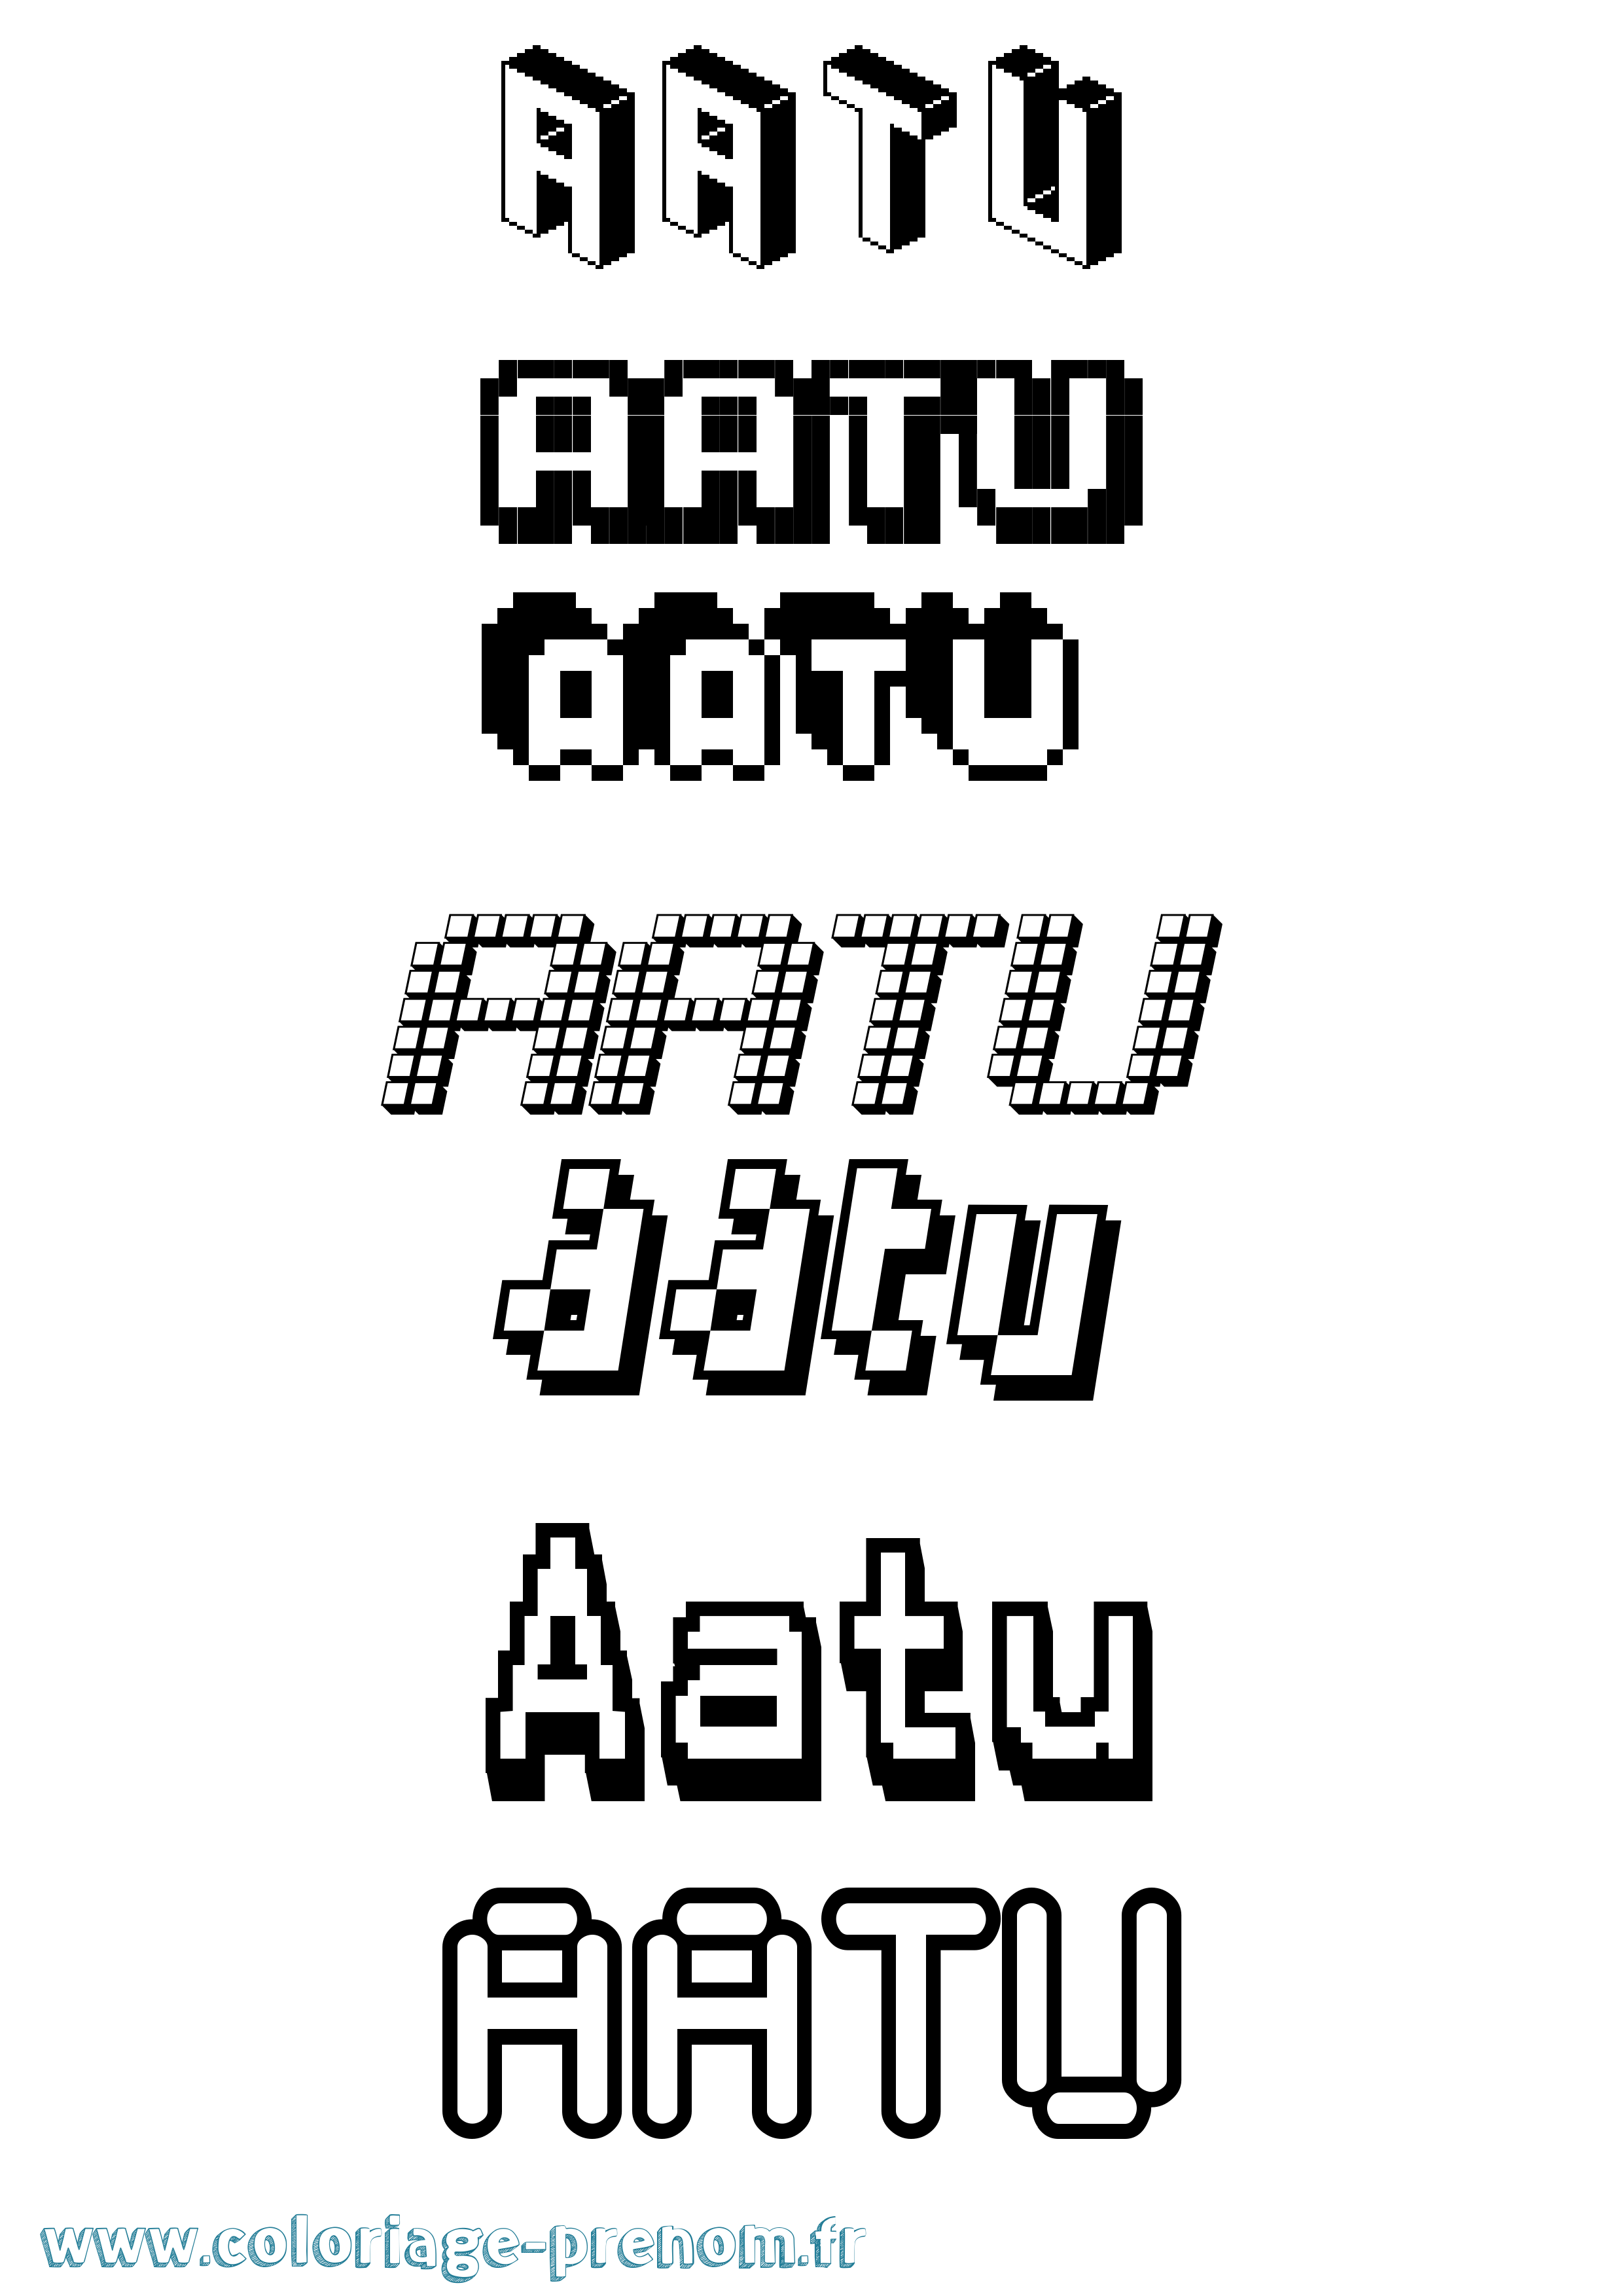 Coloriage prénom Aatu Pixel